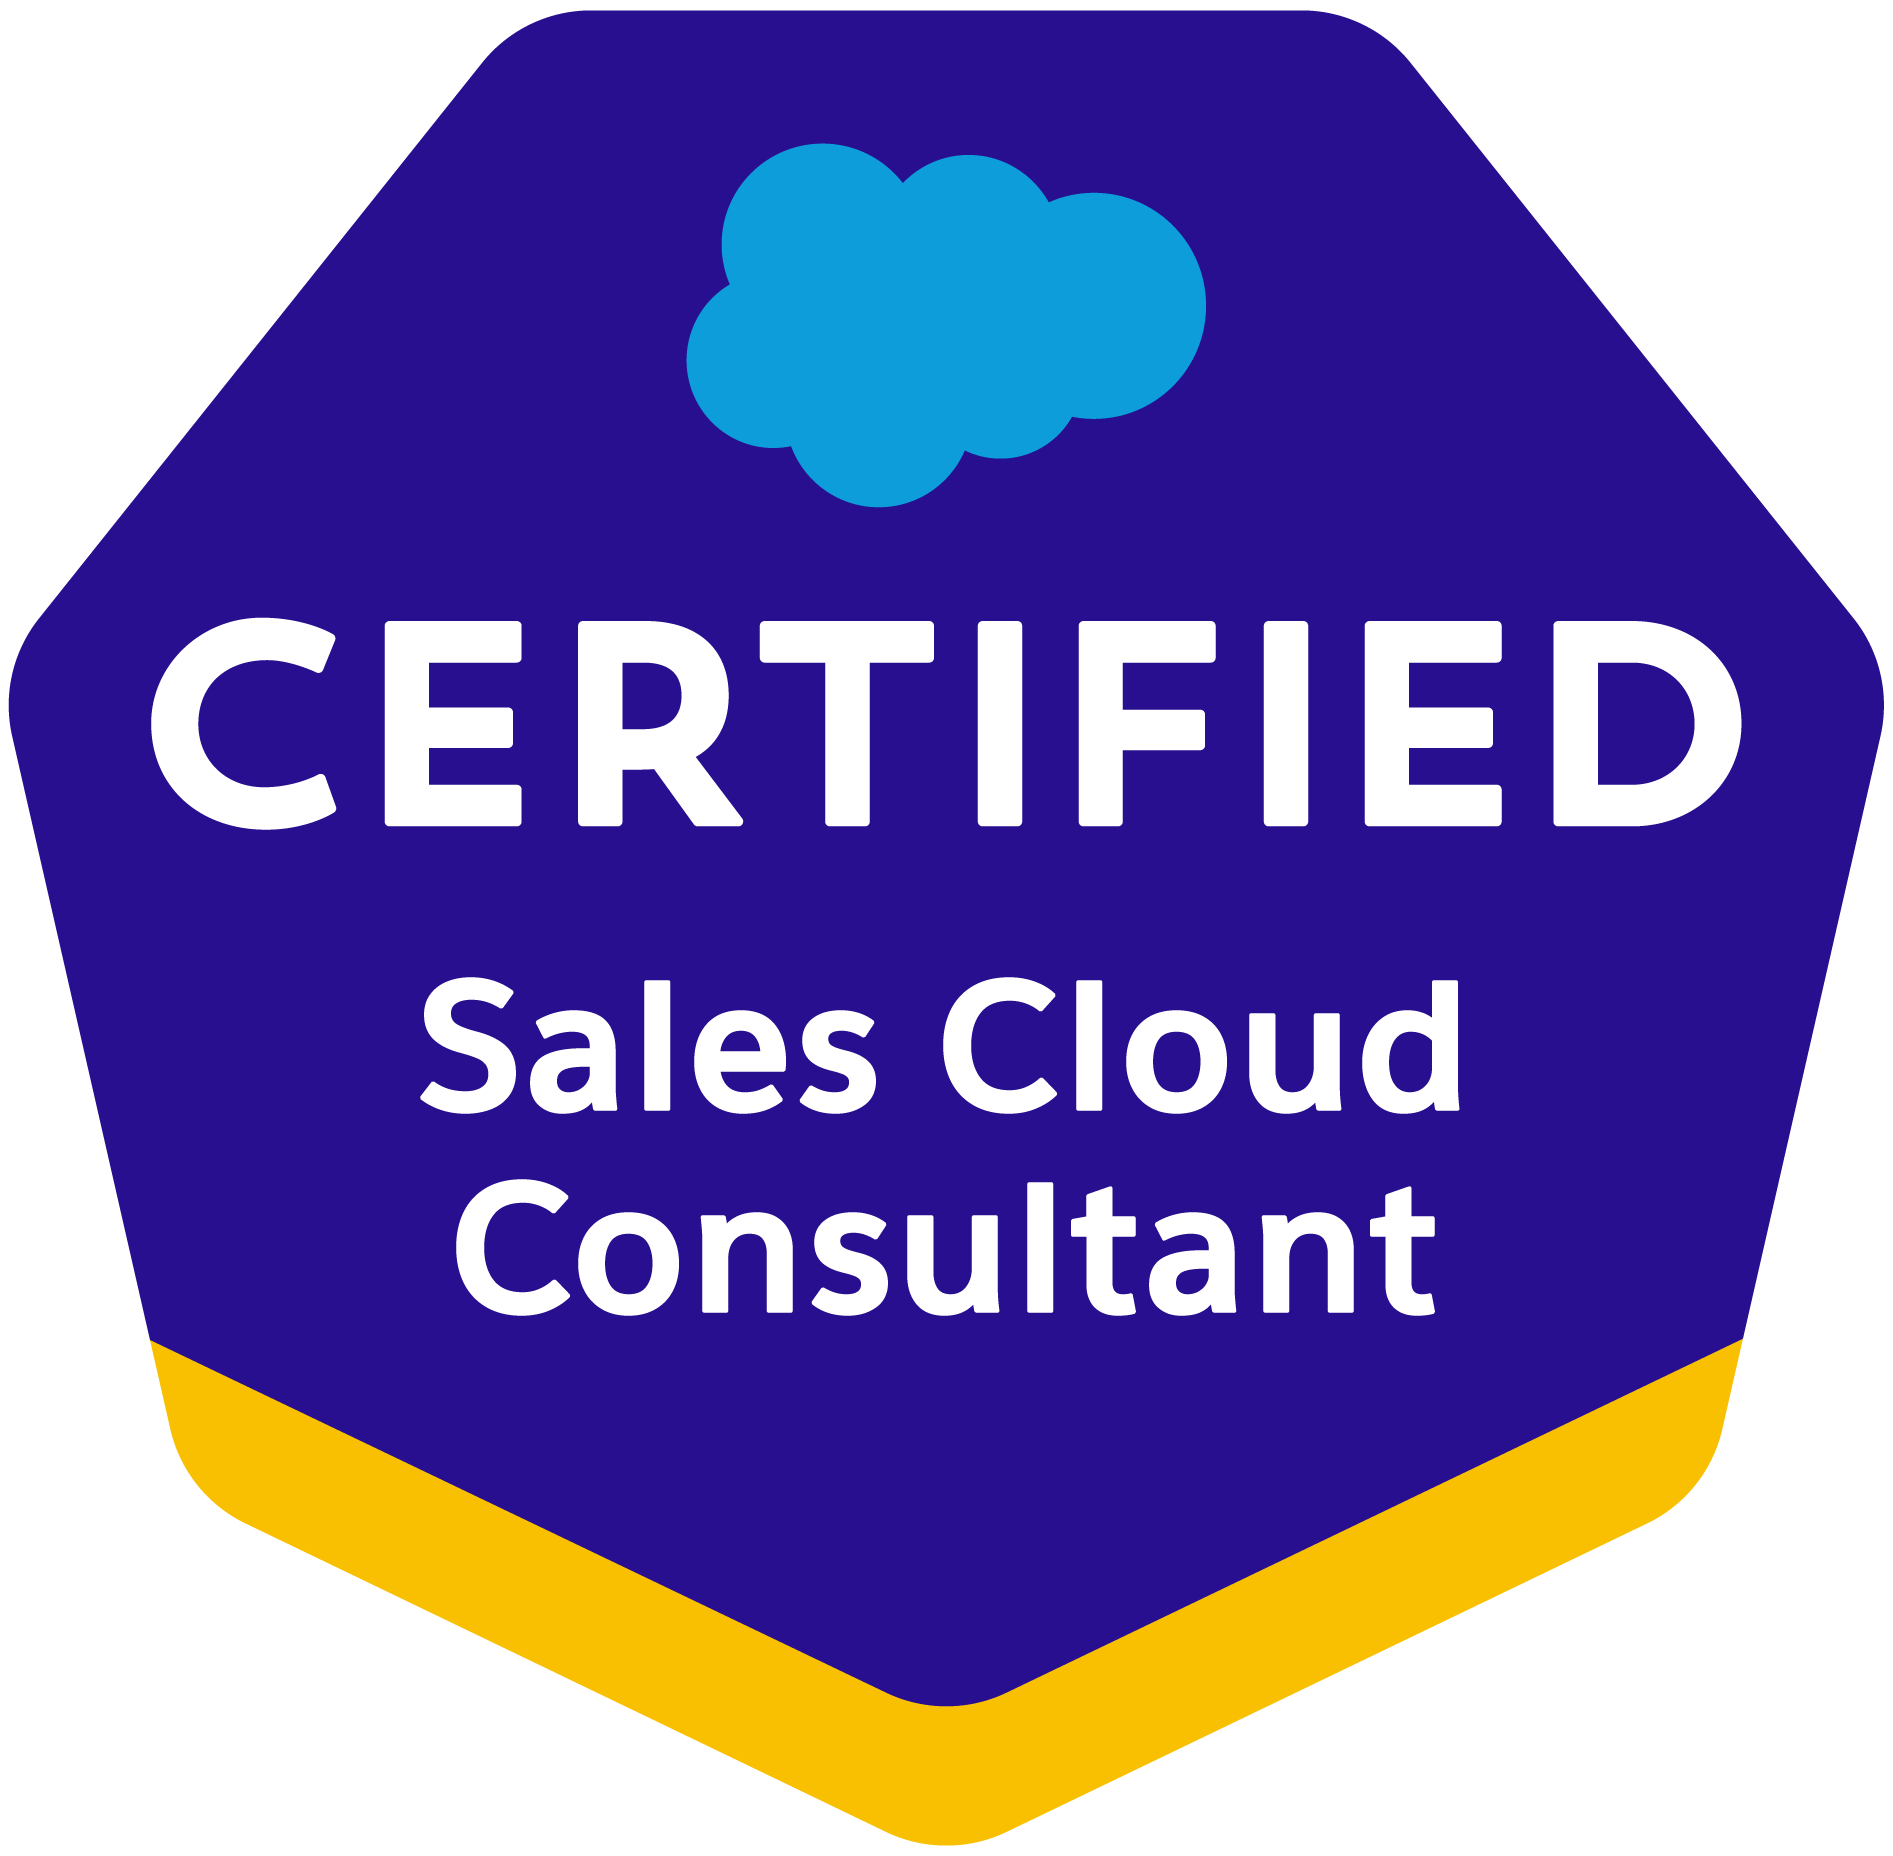 Sales cloud consultant